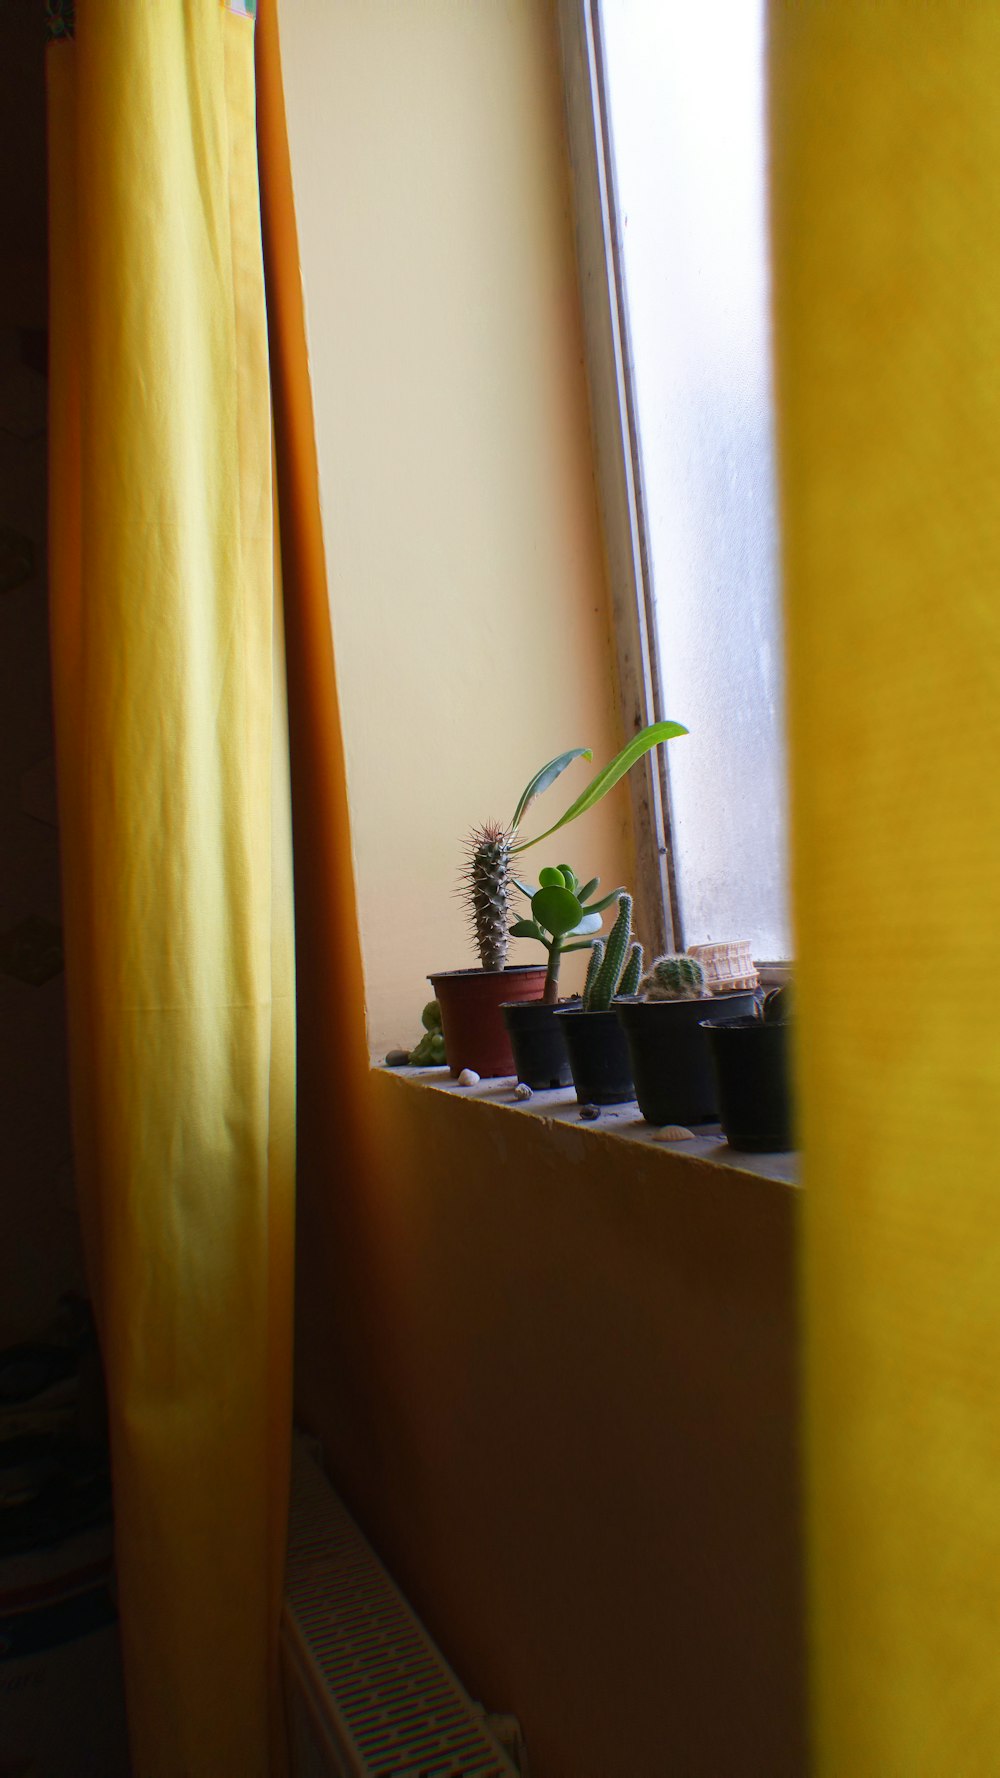 several plants beside window